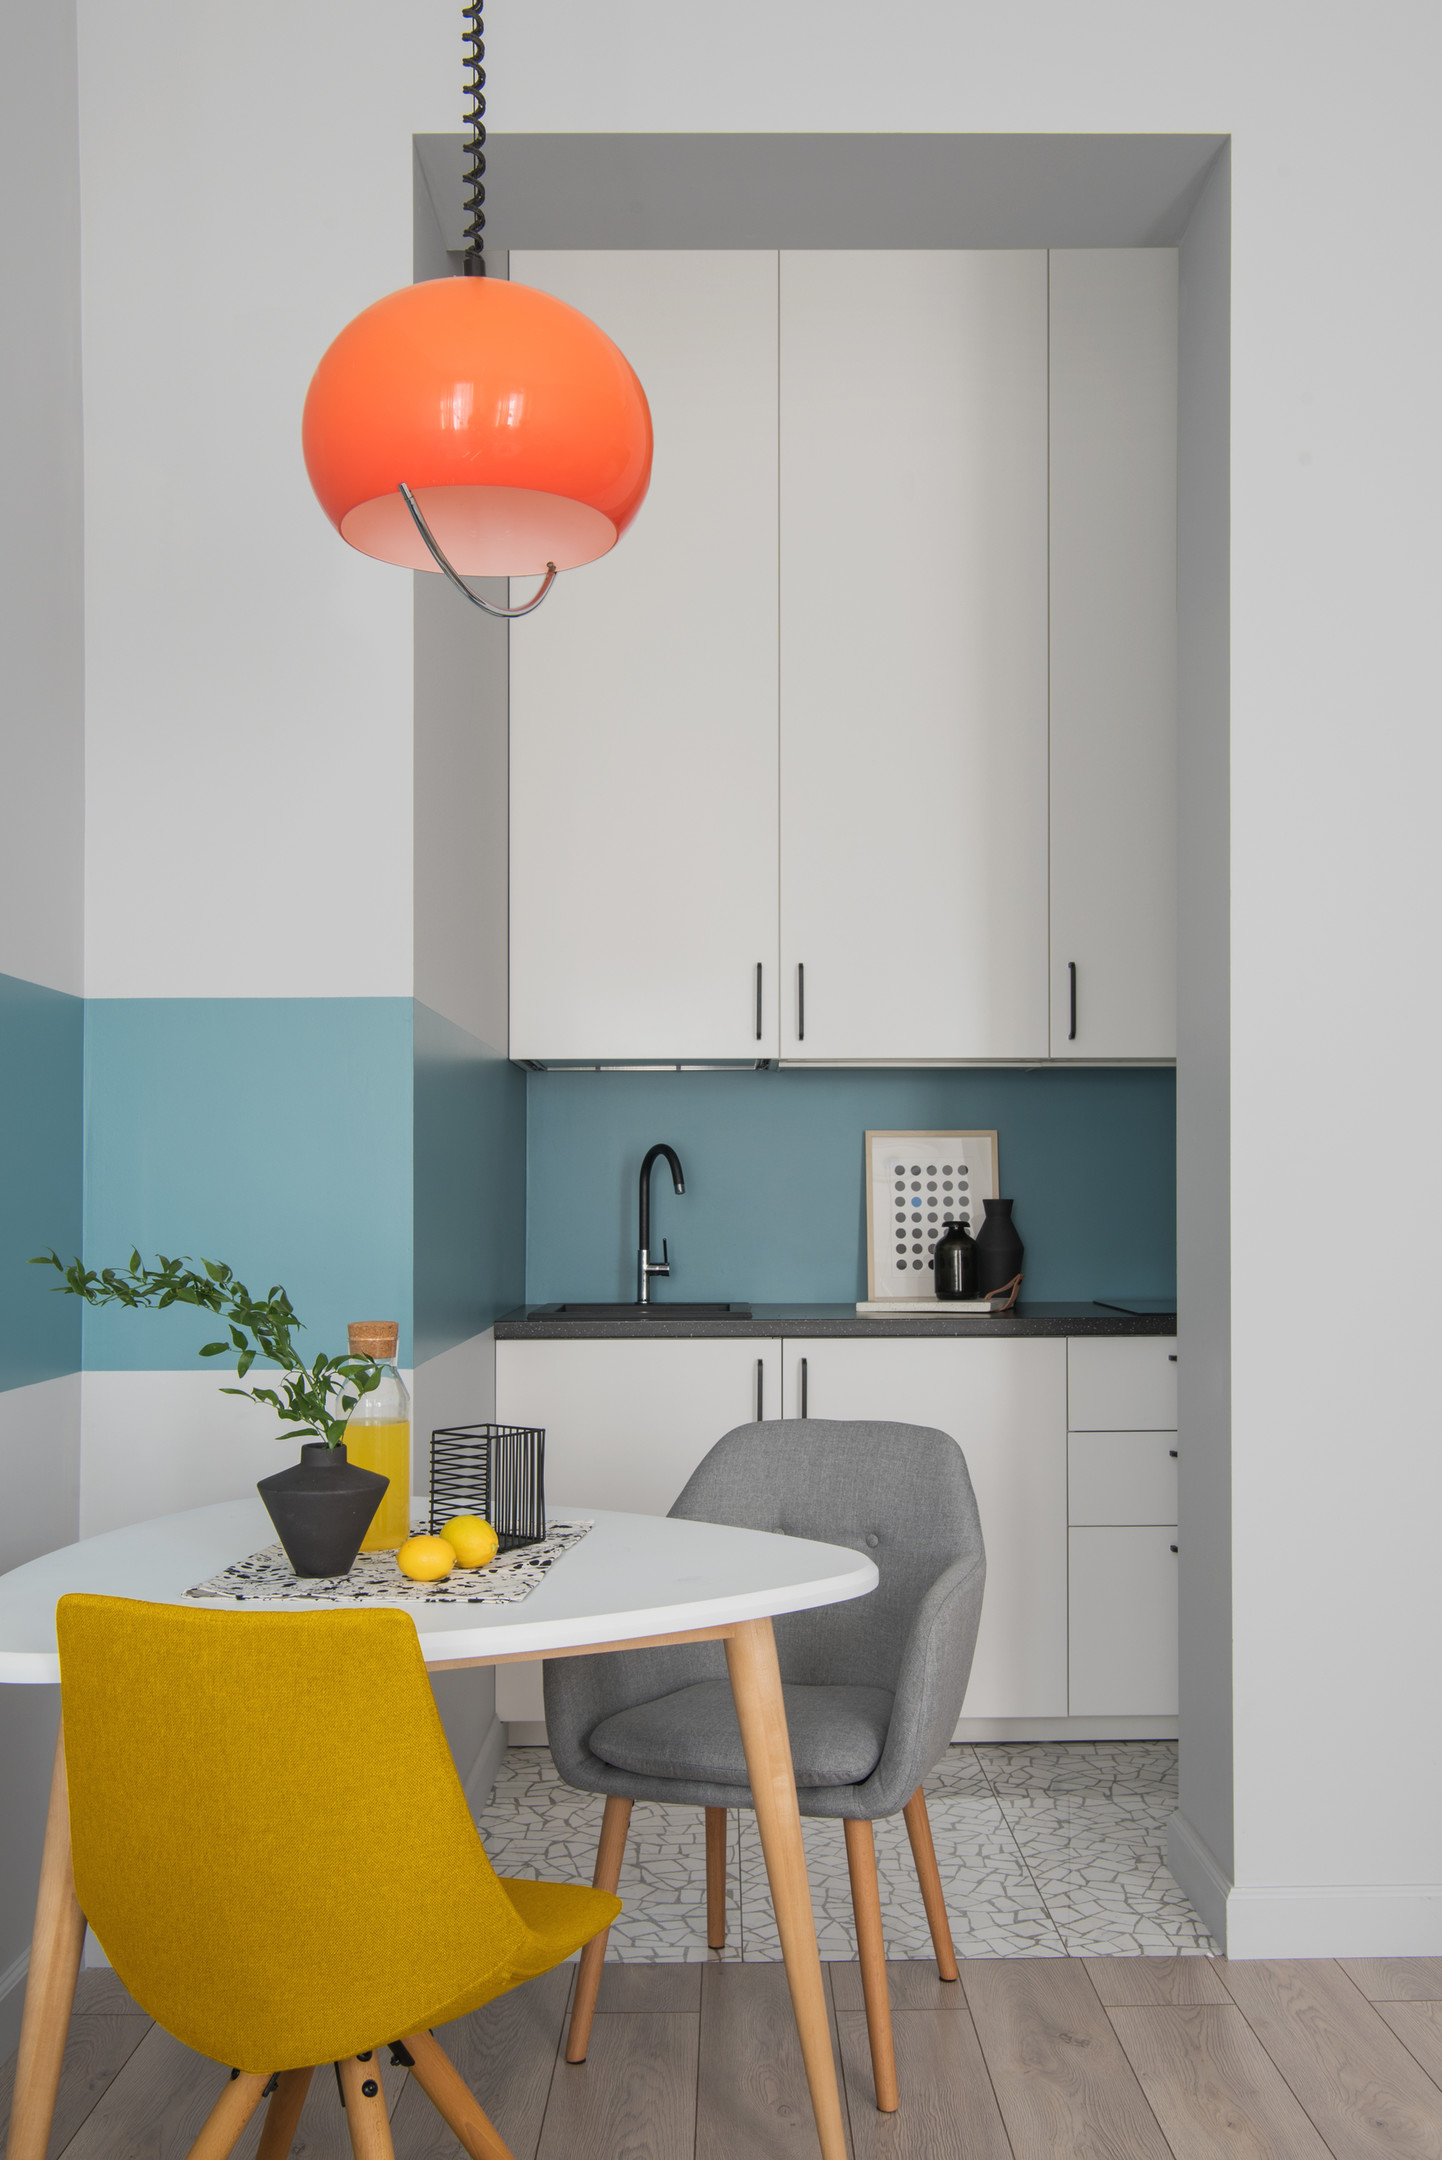 Dự án cải tạo căn hộ của NTK Sveta Khabeeva đặc biệt nhấn mạnh đến khả năng sử dụng sắc màu làm điểm nhấn. Dải sơn màu xanh lam “chạy ngang” nền tường trắng, cặp ghế xám - vàng mù tạt kết hợp với đèn thả trần màu cam. Chiếc đèn tròn trịa, xinh xắn không chỉ chiếu sáng mà còn trang trí cho căn phòng thêm bắt mắt.